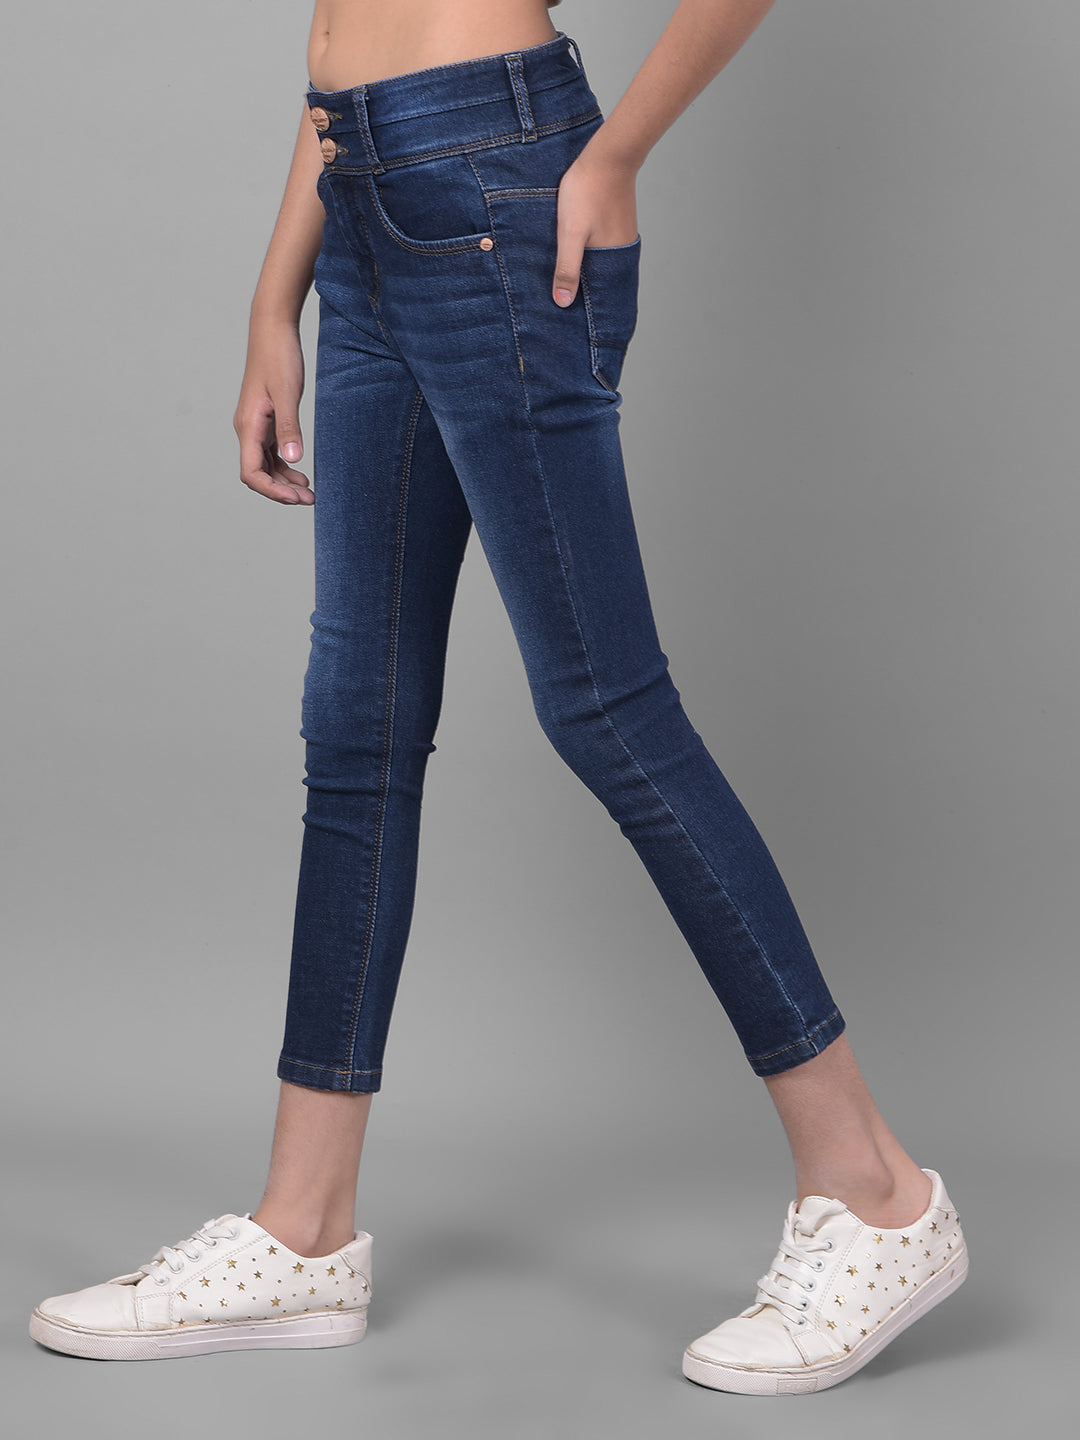 Navy Blue High-Waist Jeans-Girls Jeans-Crimsoune Club